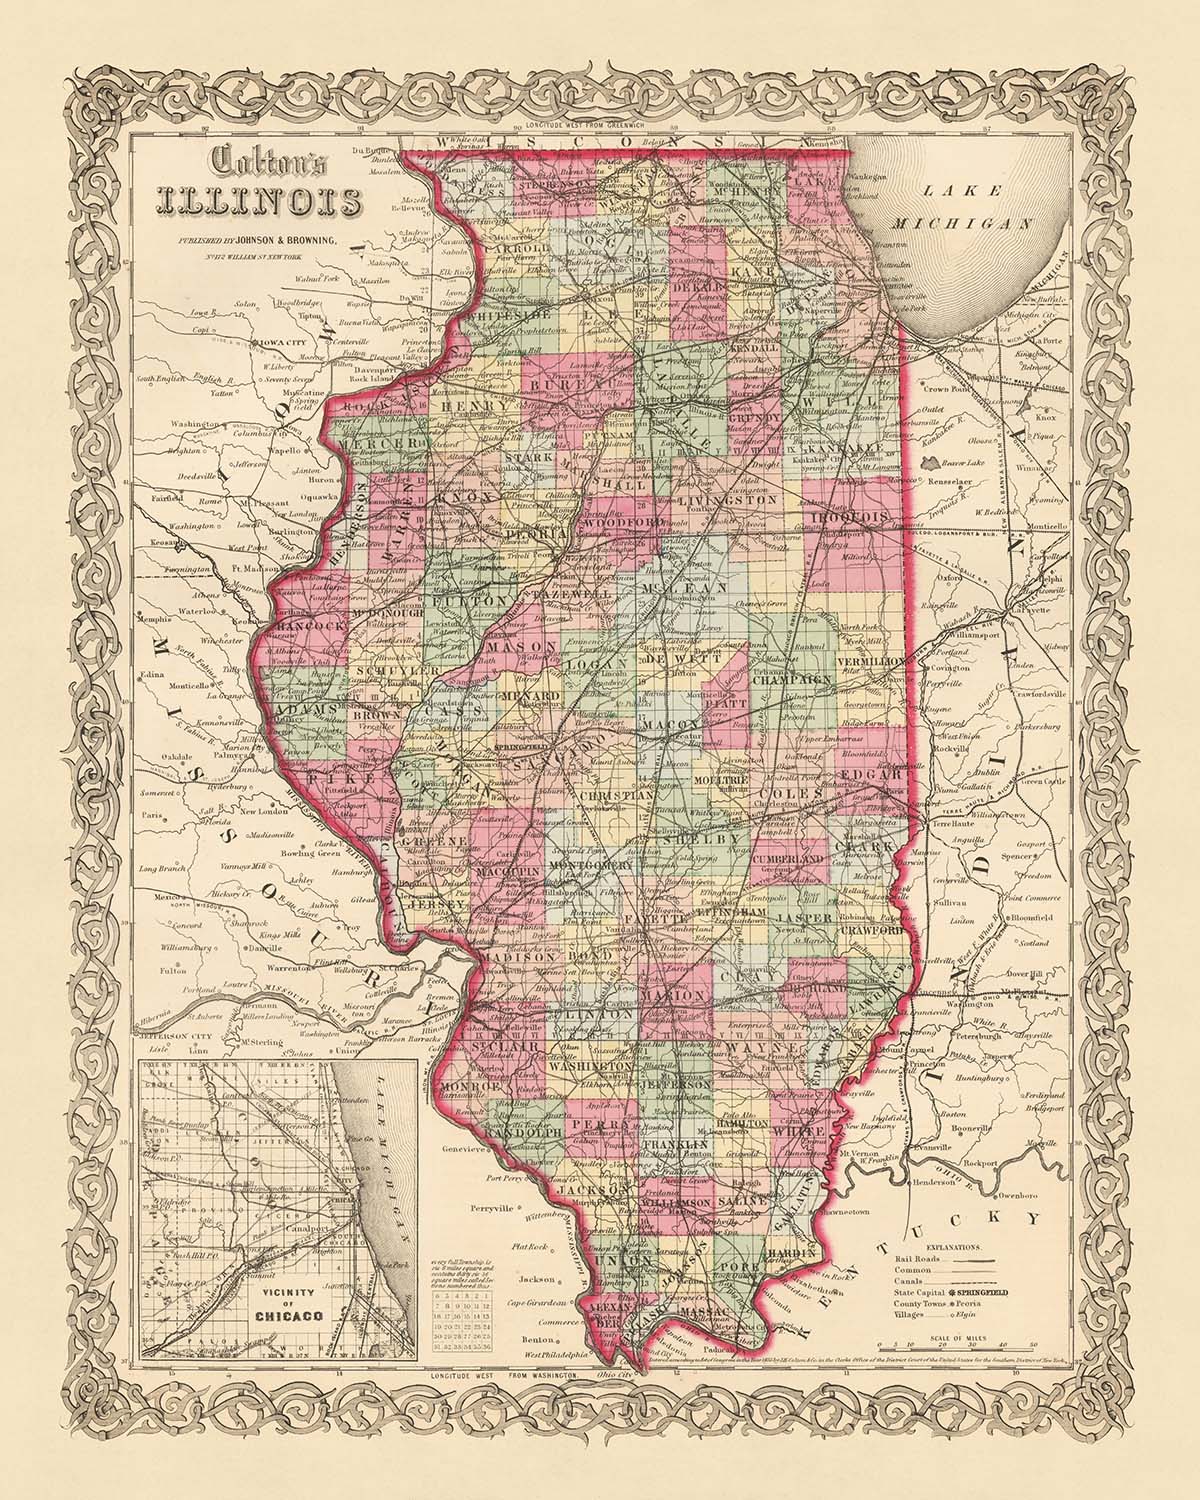 Mapa antiguo de Illinois por JH Colton, 1855: Chicago, Peoria, Springfield, Galena, Quincy